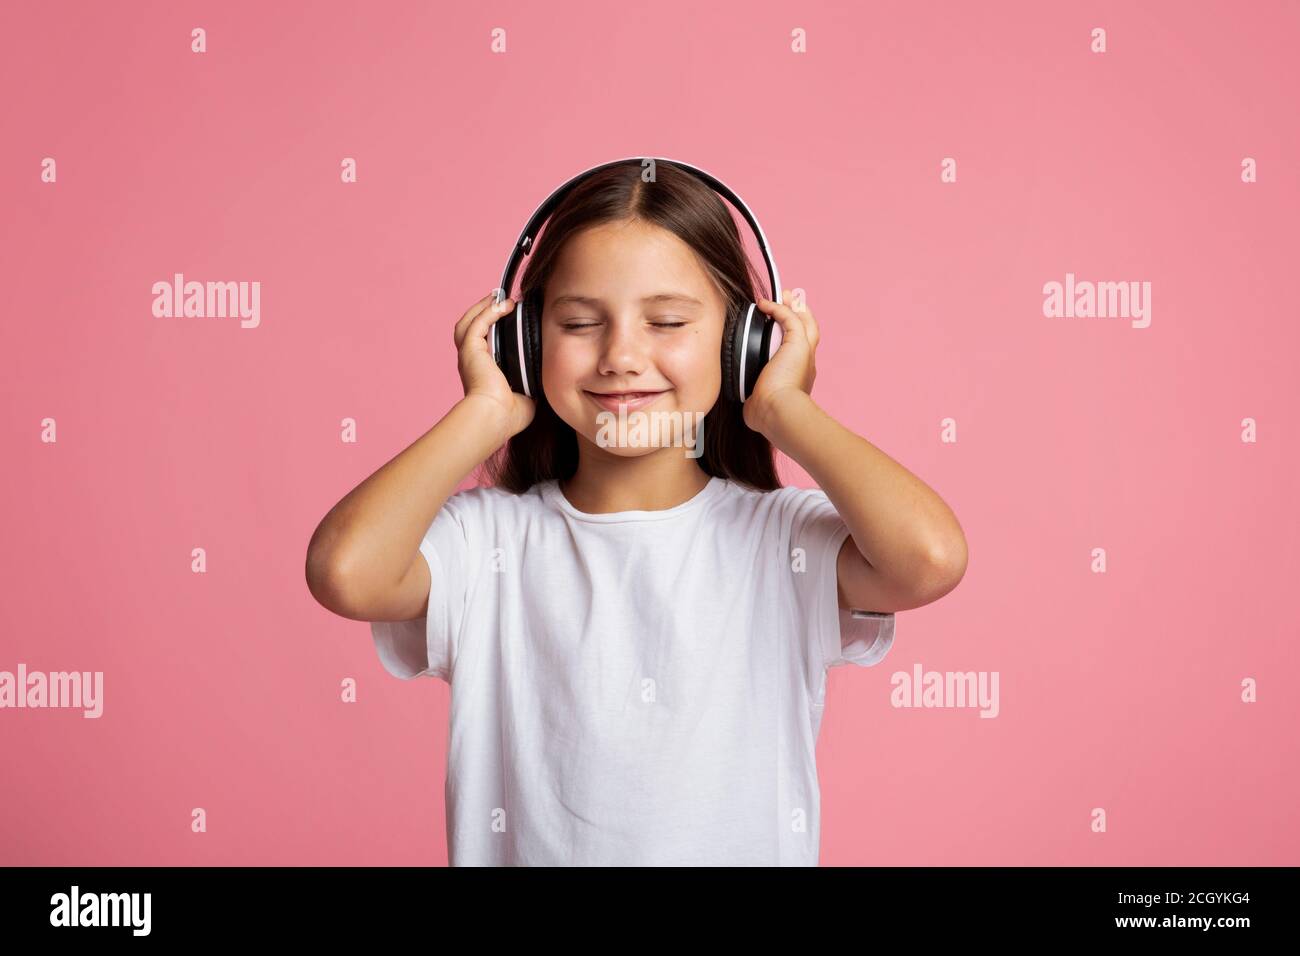 Moderne Kinder und Geräte. Kleines Kind mit geschlossenen Kopfhörern und Musik genießen Stockfoto